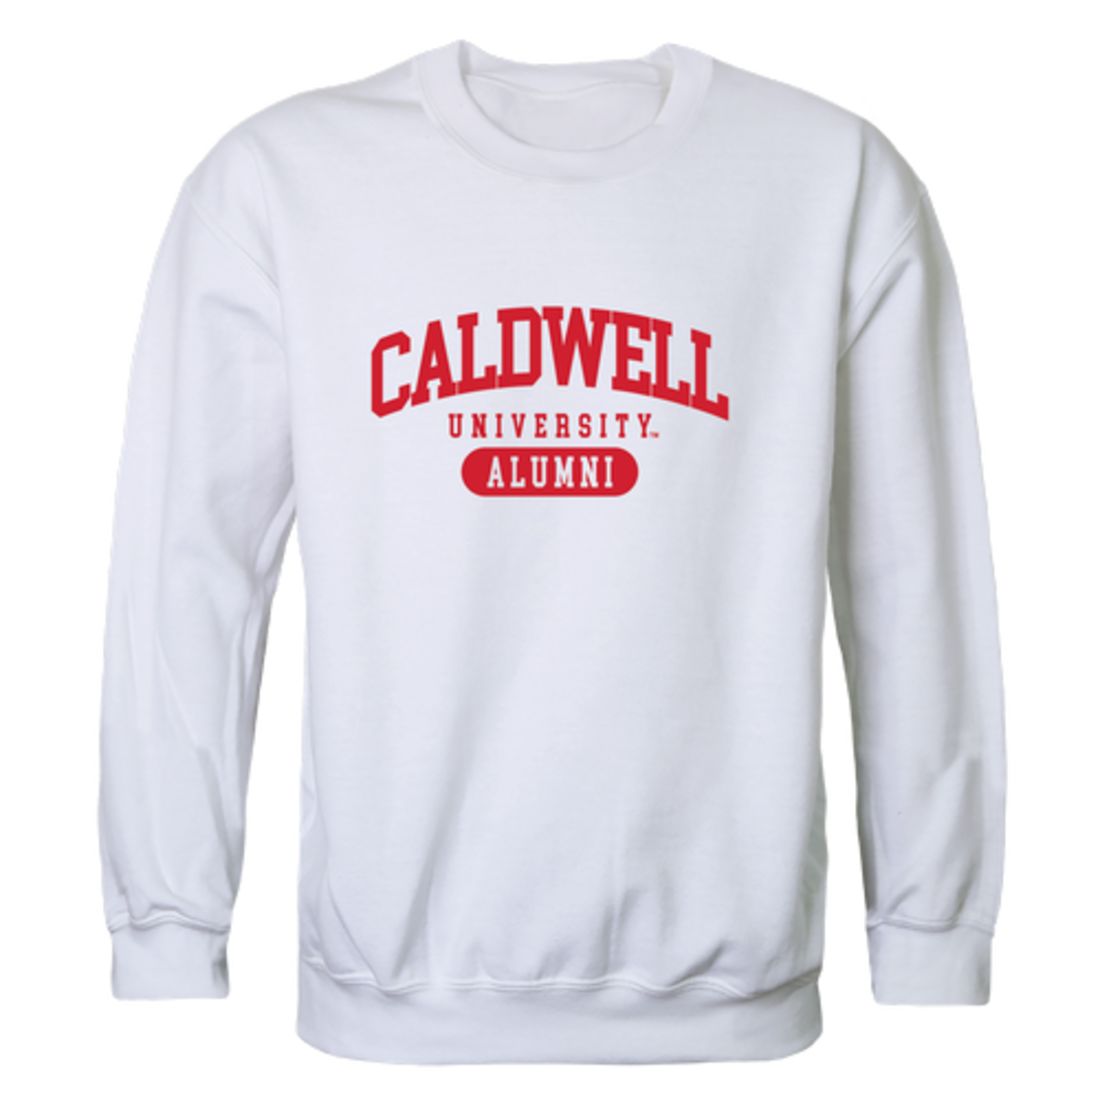 Caldwell University Cougars Alumni Crewneck Sweatshirt